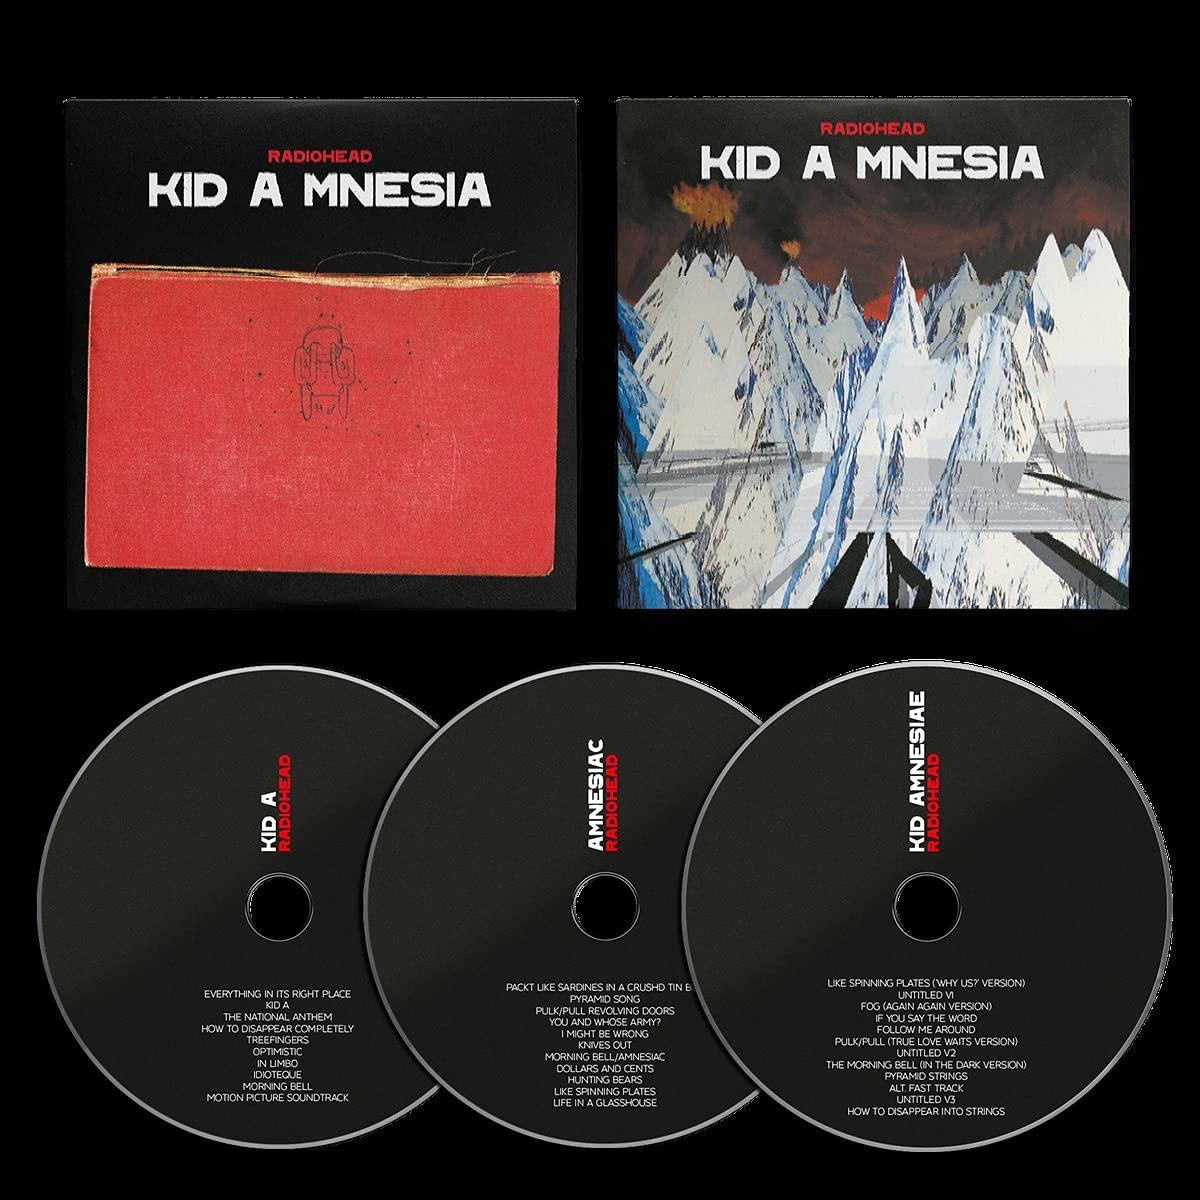 (3 (CD) - - Cd) Mnesia Kid Radiohead A